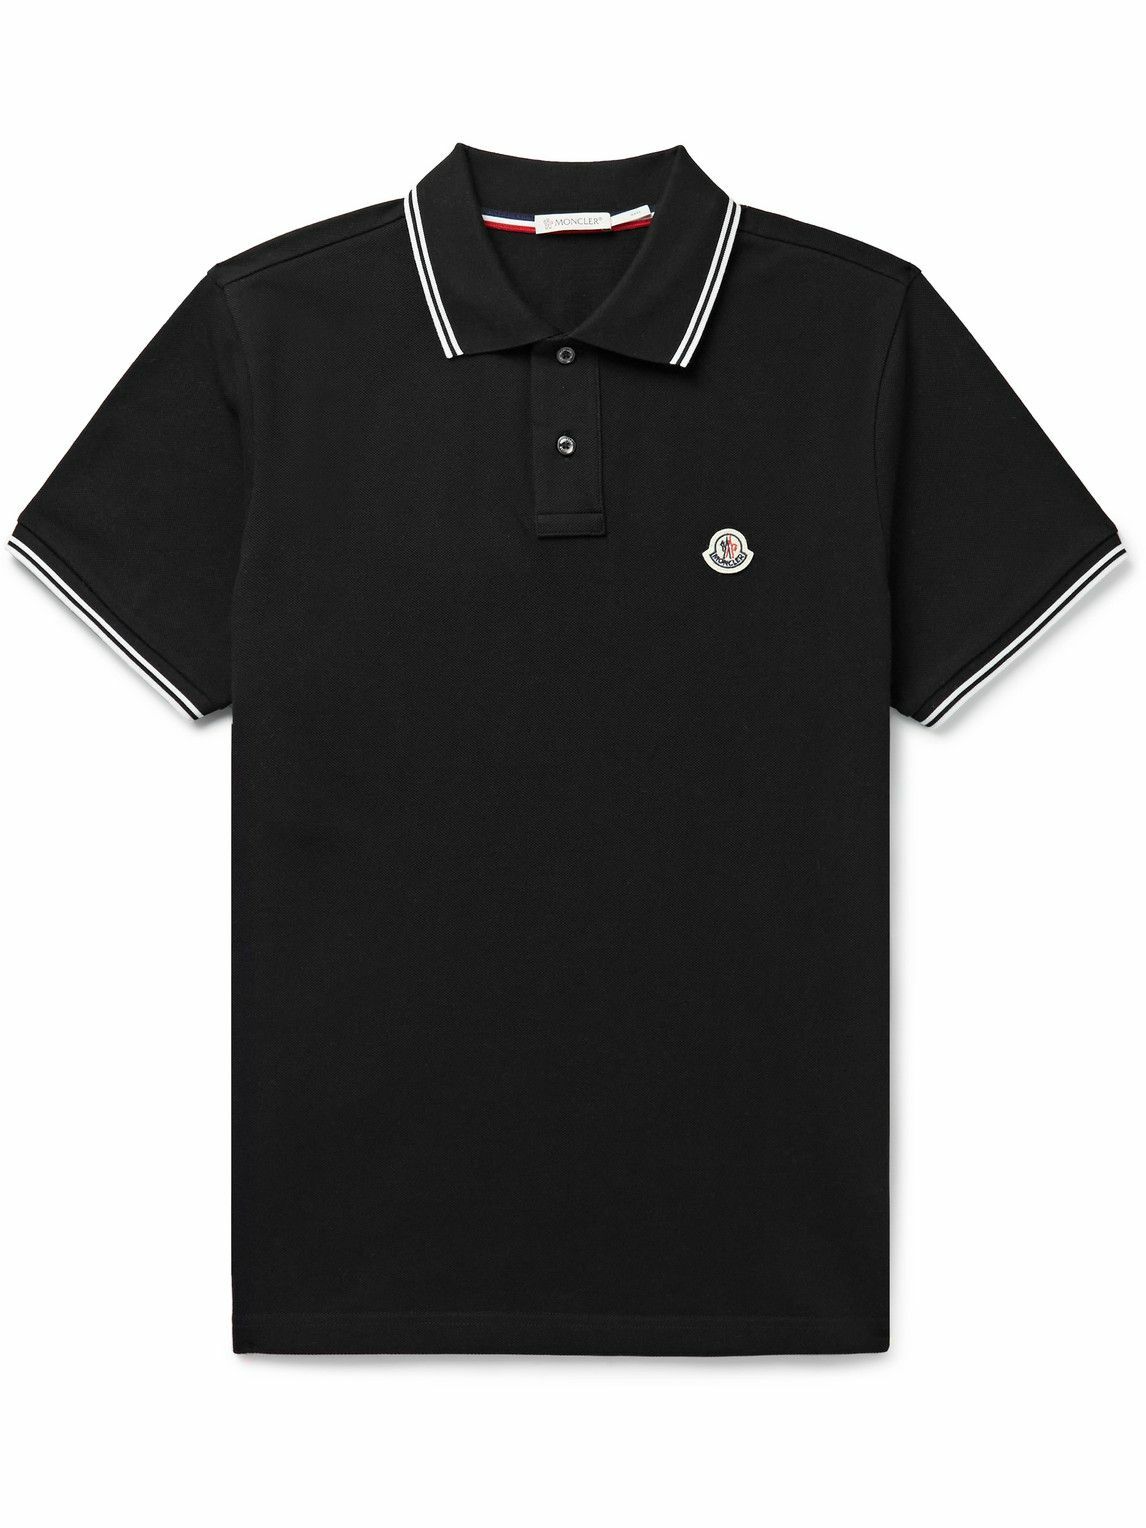 Moncler - Logo-Appliquéd Cotton-Piqué Polo Shirt - Black Moncler